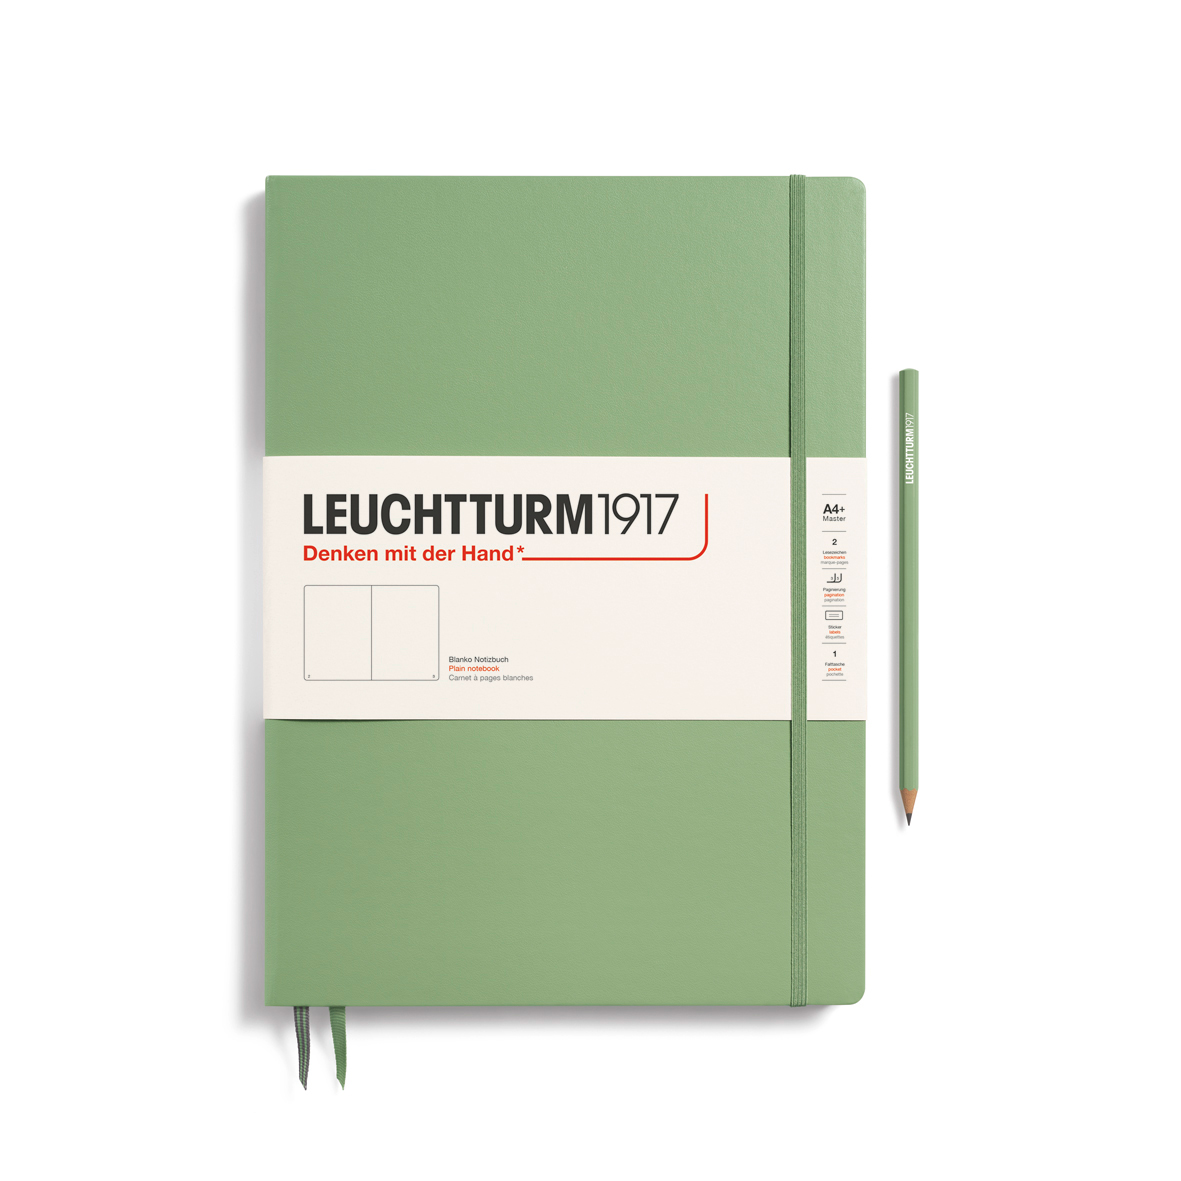 Записная книжка нелинованная Leuchtturm Master Slim А4+ 123 стр., твердая обложка пастельный зеленый записная книжка а6 24л кл sign сшивка ассорти languo